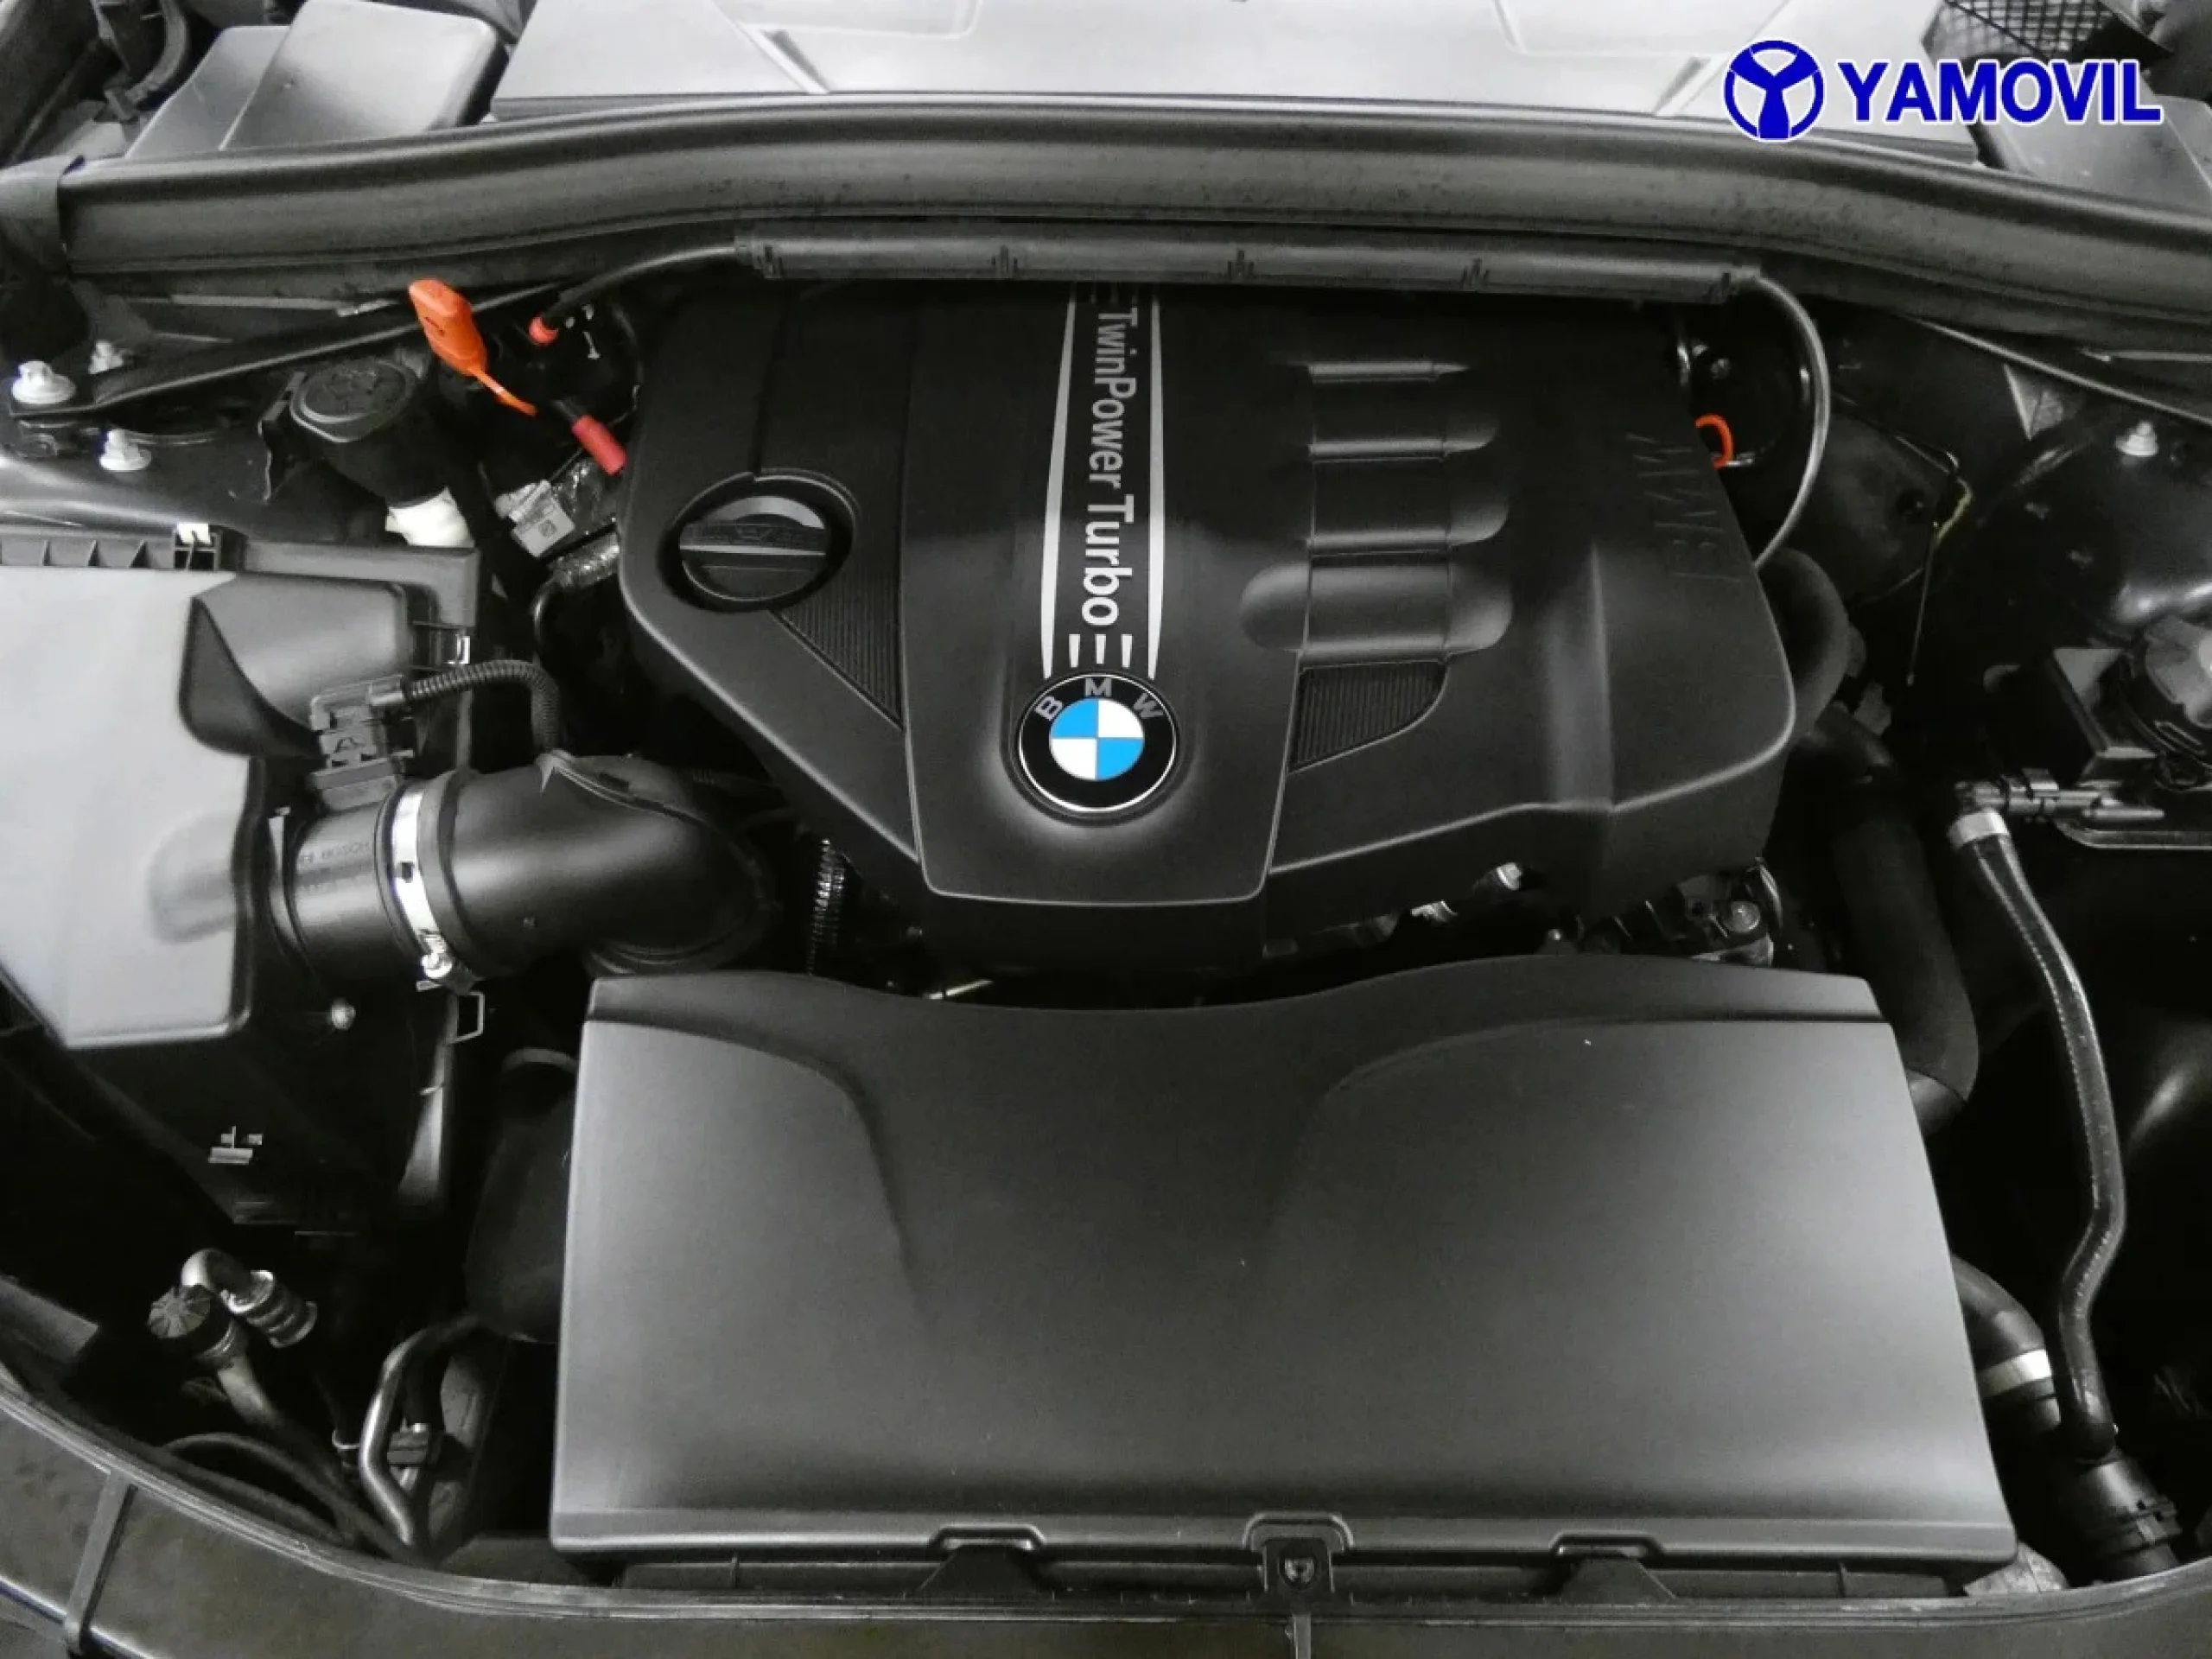 BMW X1 sDrive18d 105 kW (143 CV) - Foto 8